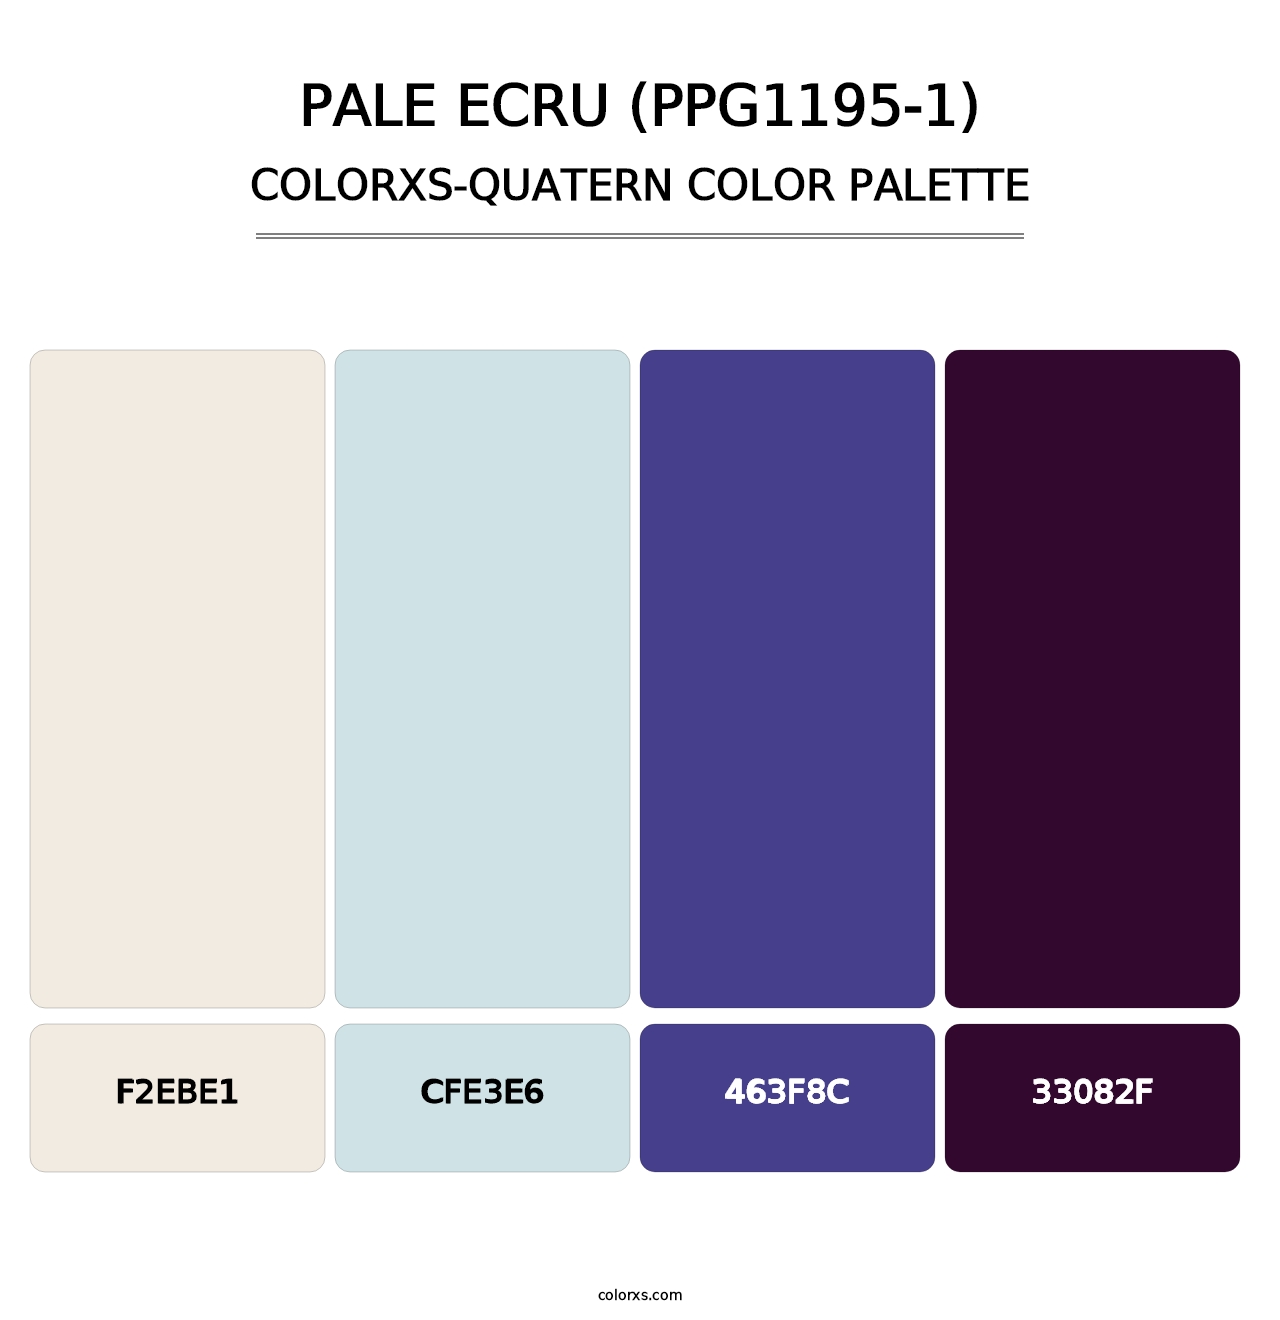 Pale Ecru (PPG1195-1) - Colorxs Quatern Palette